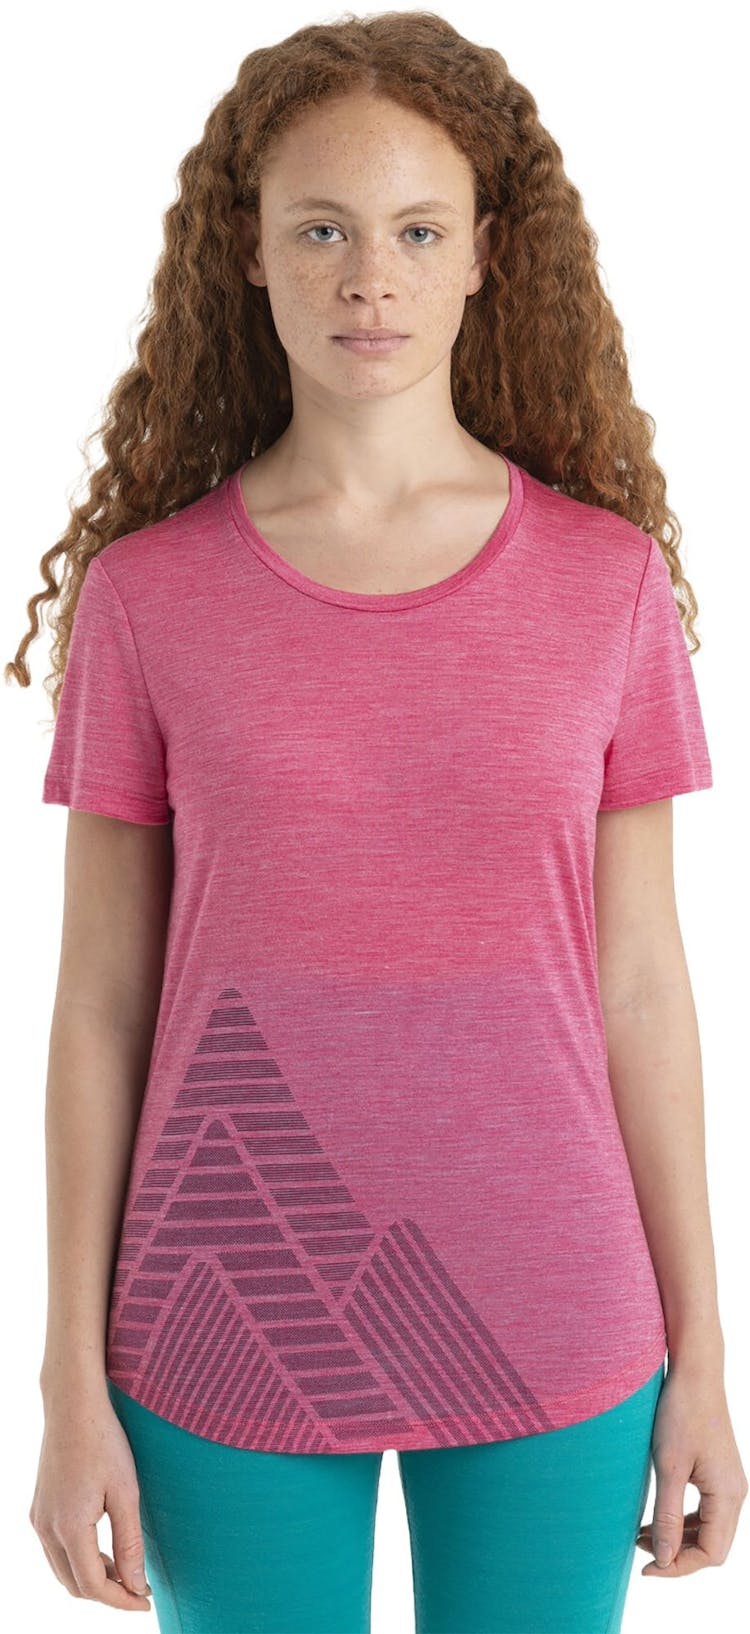 Numéro de l'image de la galerie de produits 1 pour le produit T-shirt à manches courtes Mérino 125 Cool-Lite Sphere II Peak Quest - Femme